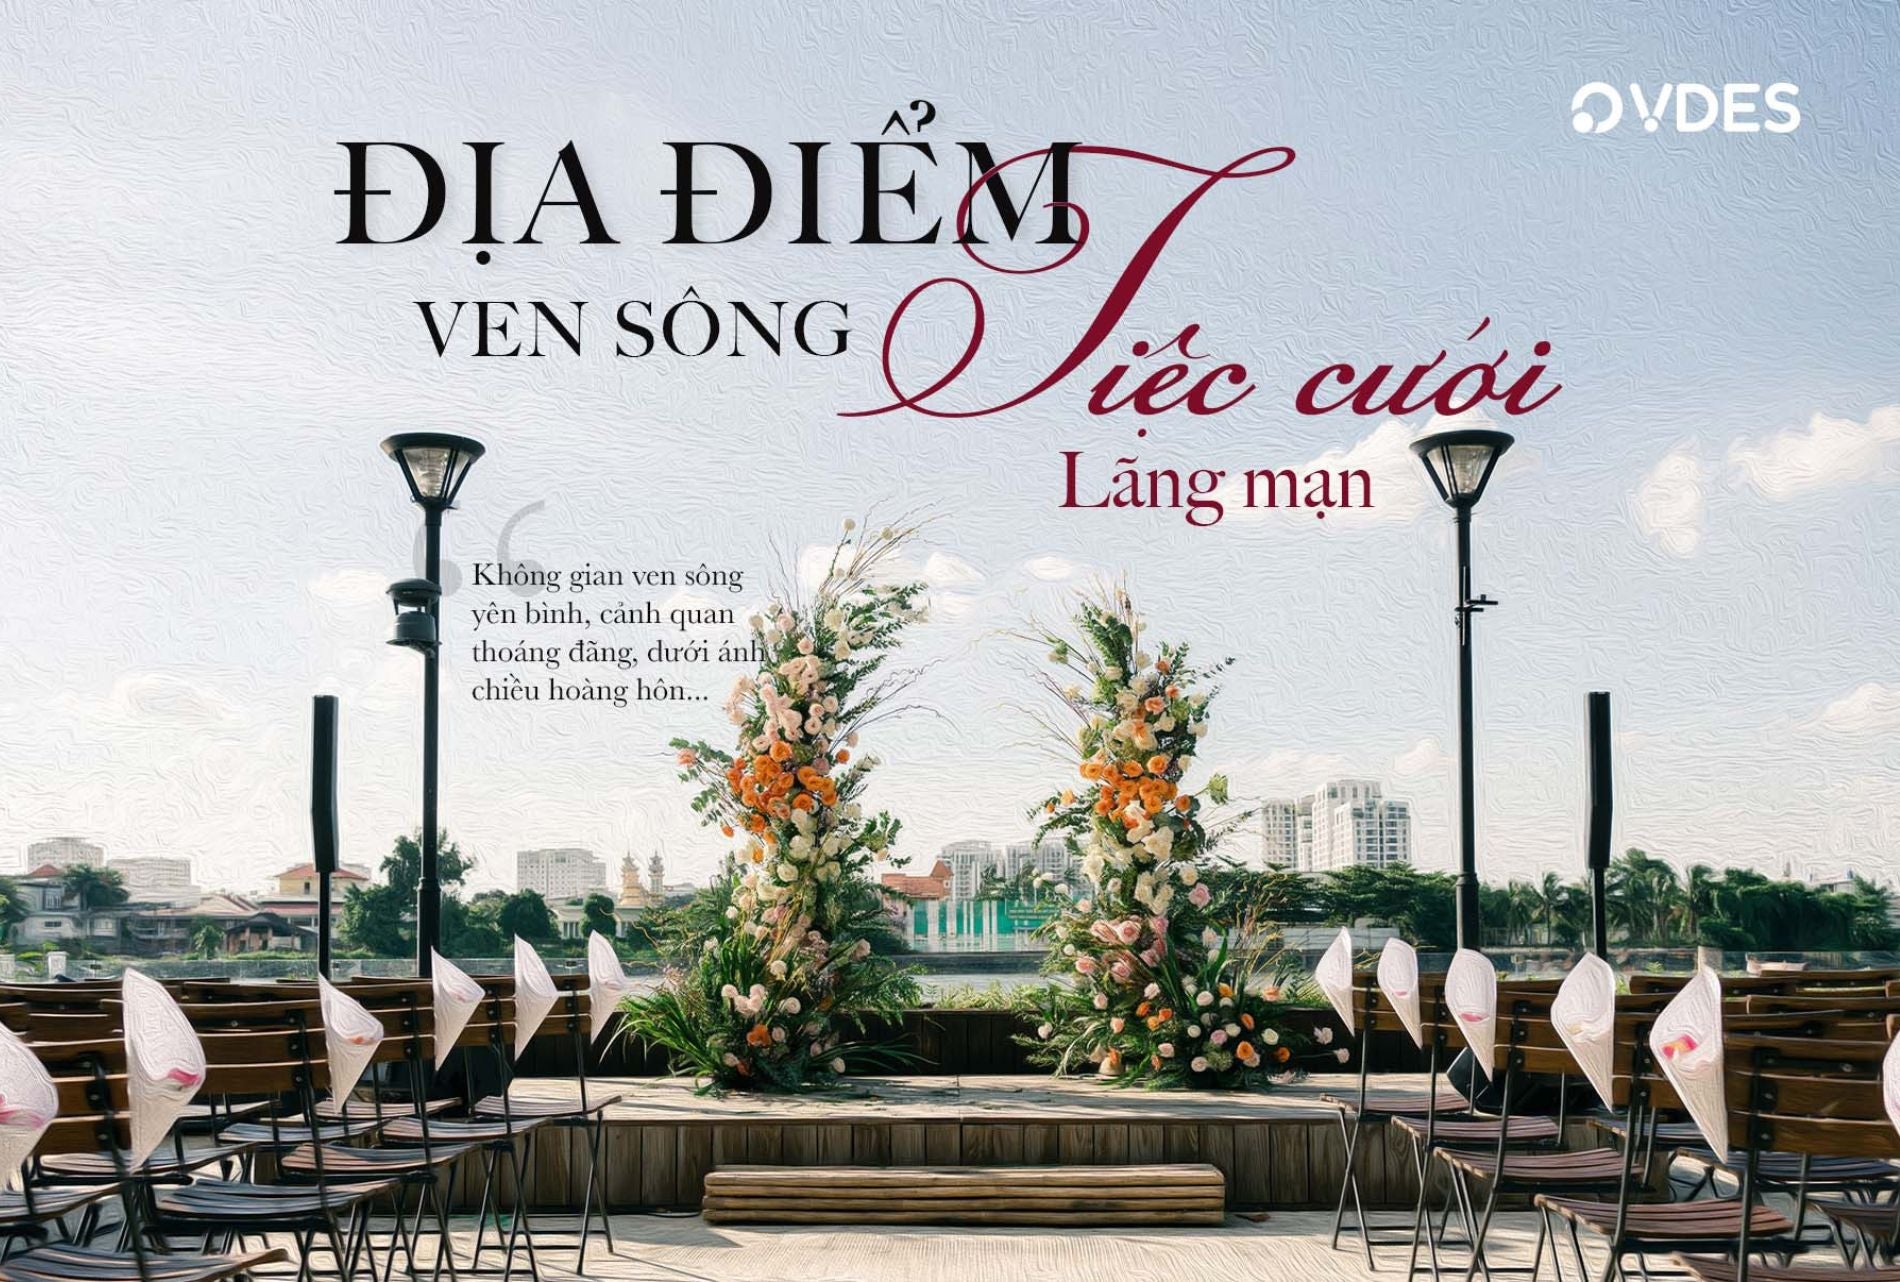 Top 3 địa điểm tổ chức tiệc cưới lãng mạng ven sông Sài Gòn